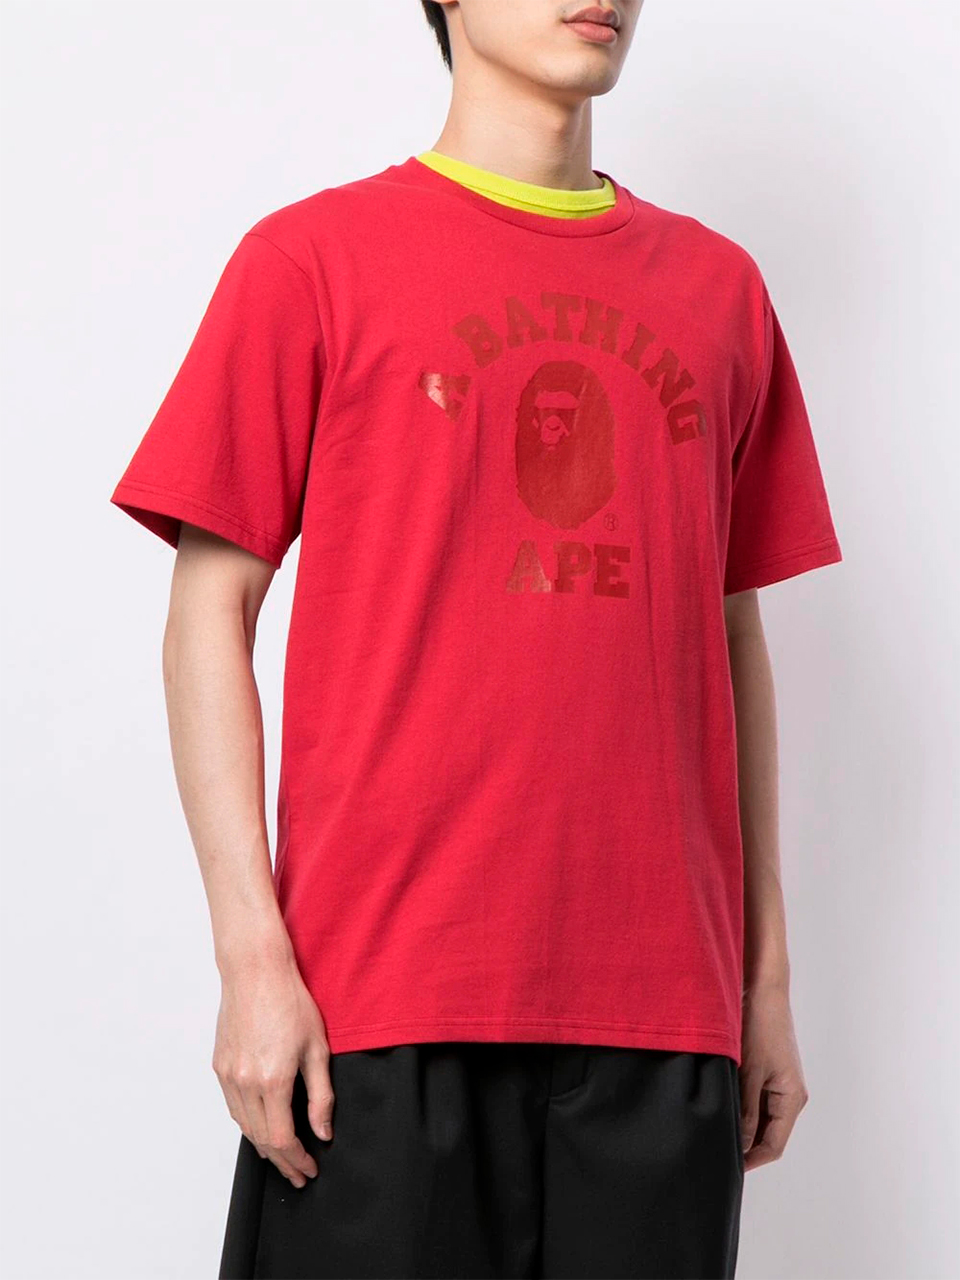 Imagem de: Camiseta BAPE Vermelha com Logo